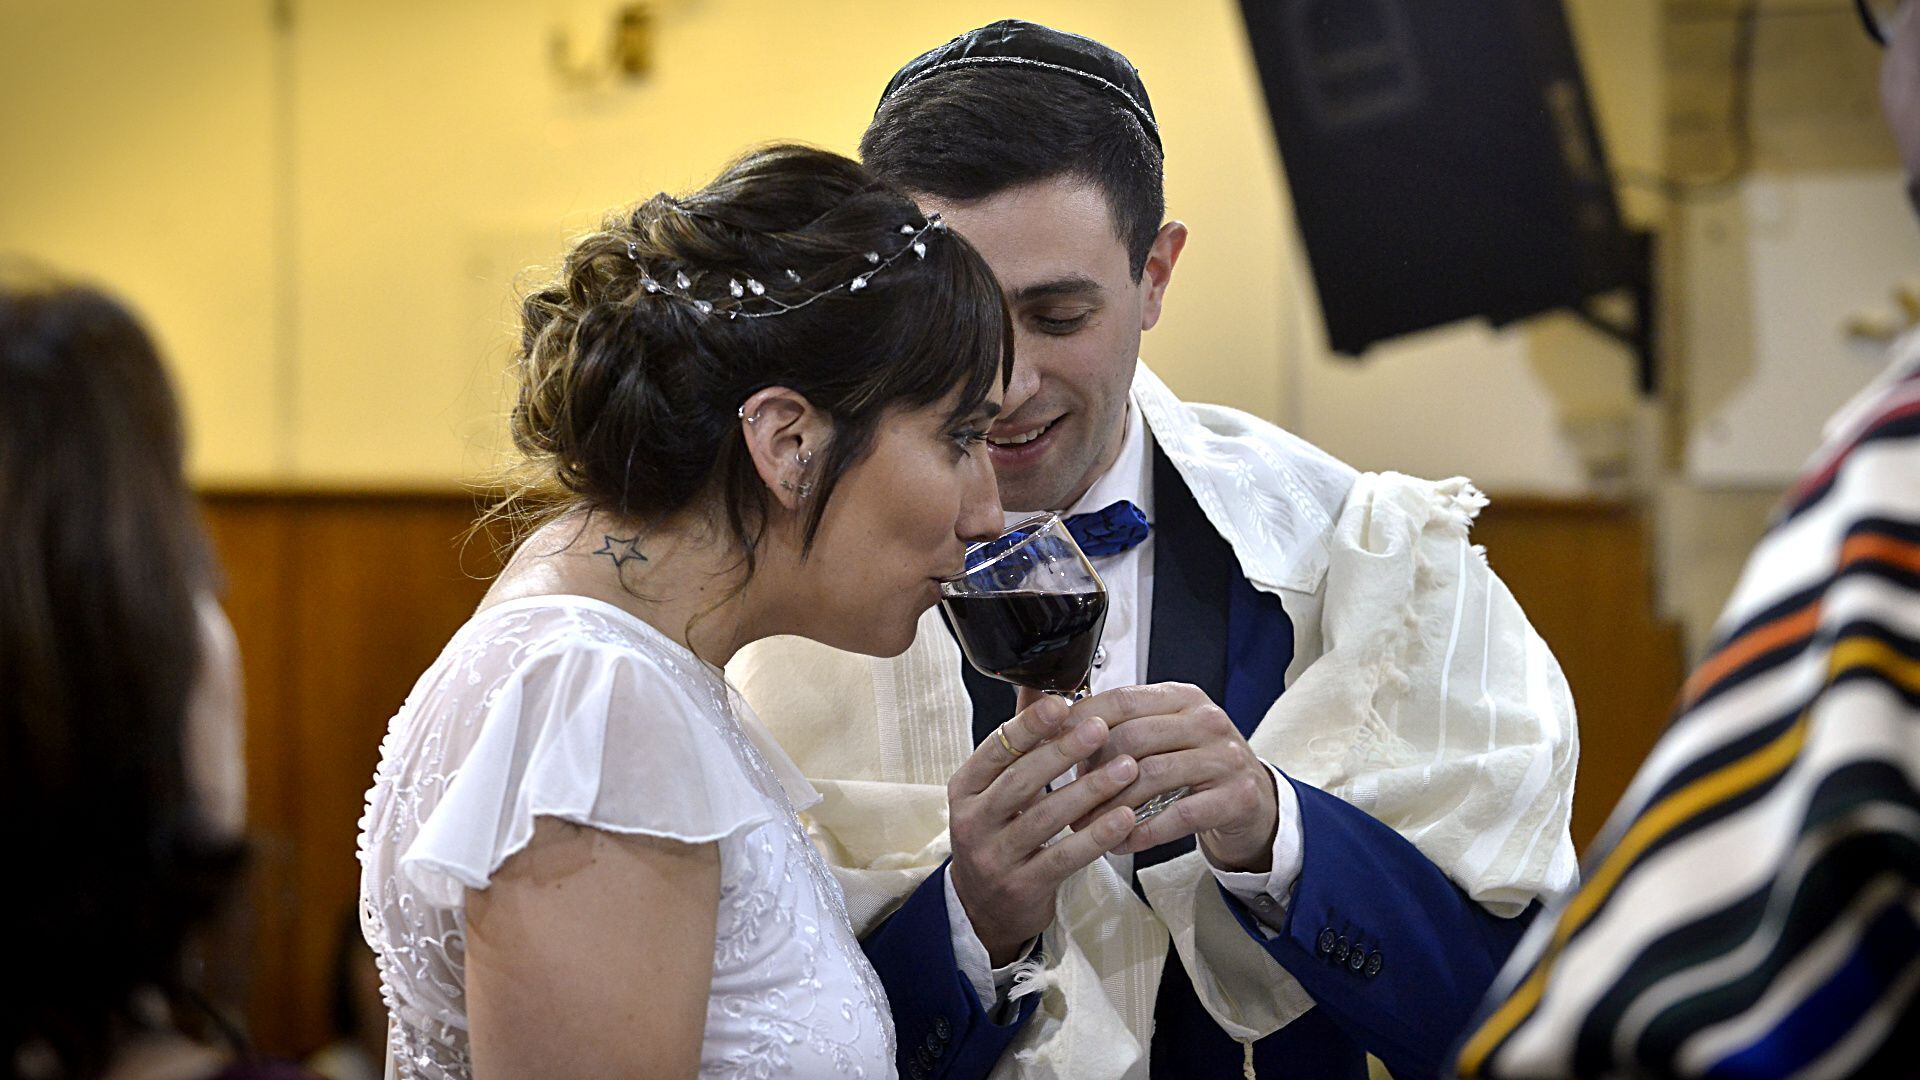 El joven matrimonio bebió de la tradicional copa de vino en dos momentos, uno previo a la consagración del matrimonio y una vez casados